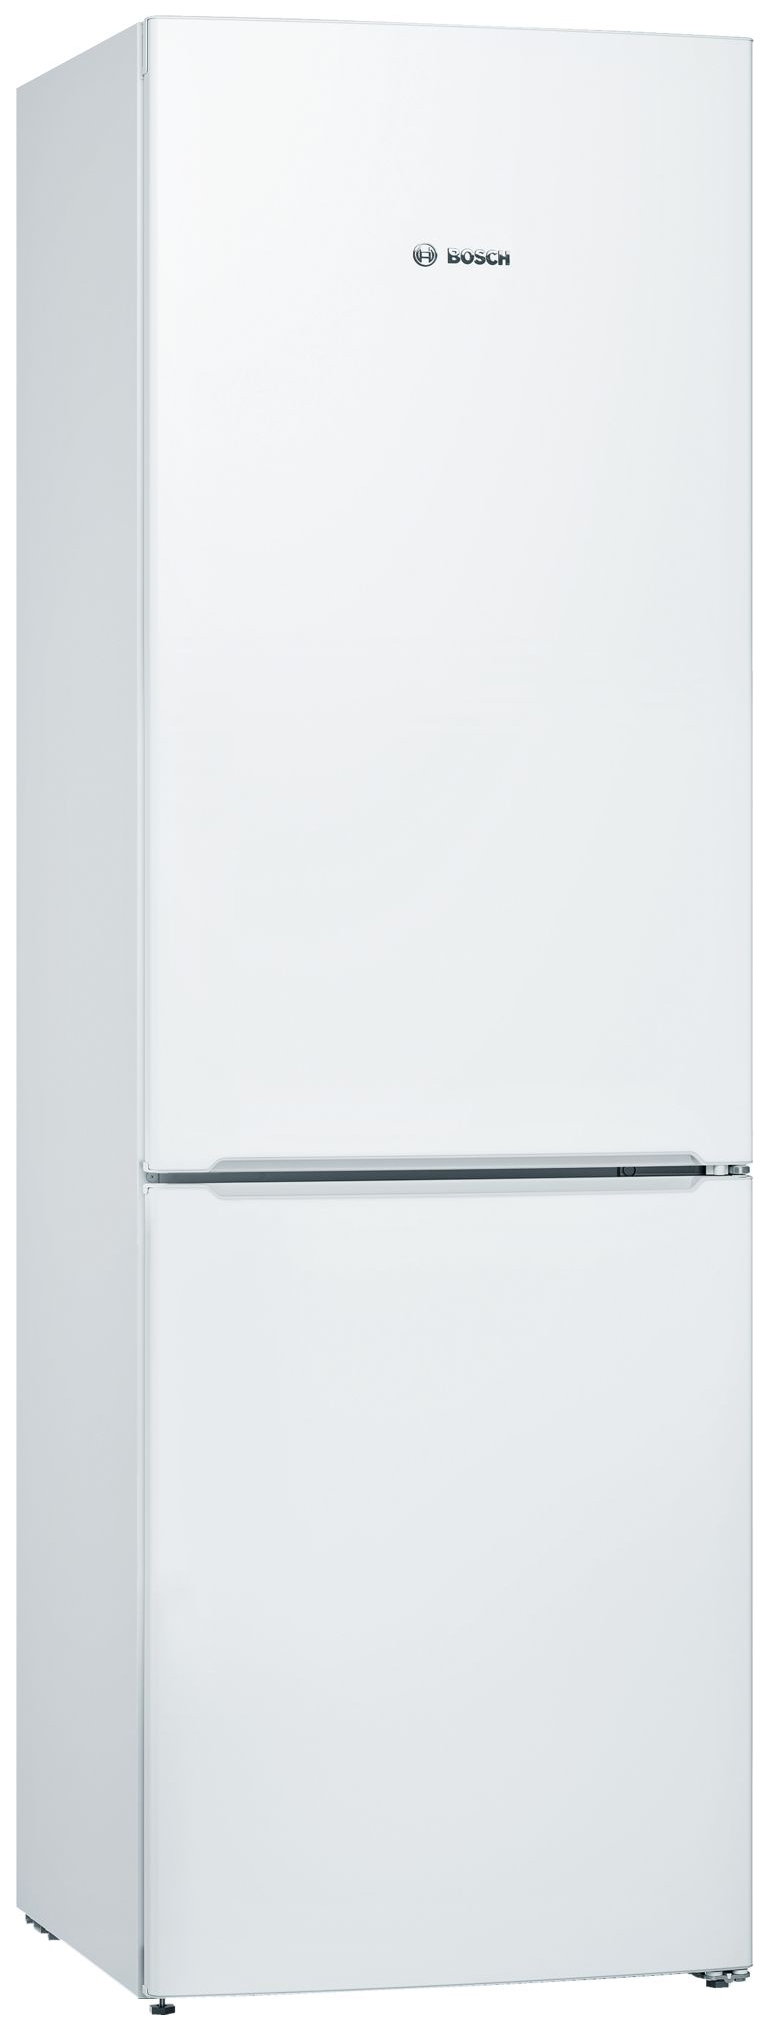 Холодильник Bosch KGV36NW1AR белый навесная панель на двухкамерный холодильник bosch variostyle kgn 39 ij 3 ar со сменной панелью розовый пудровый